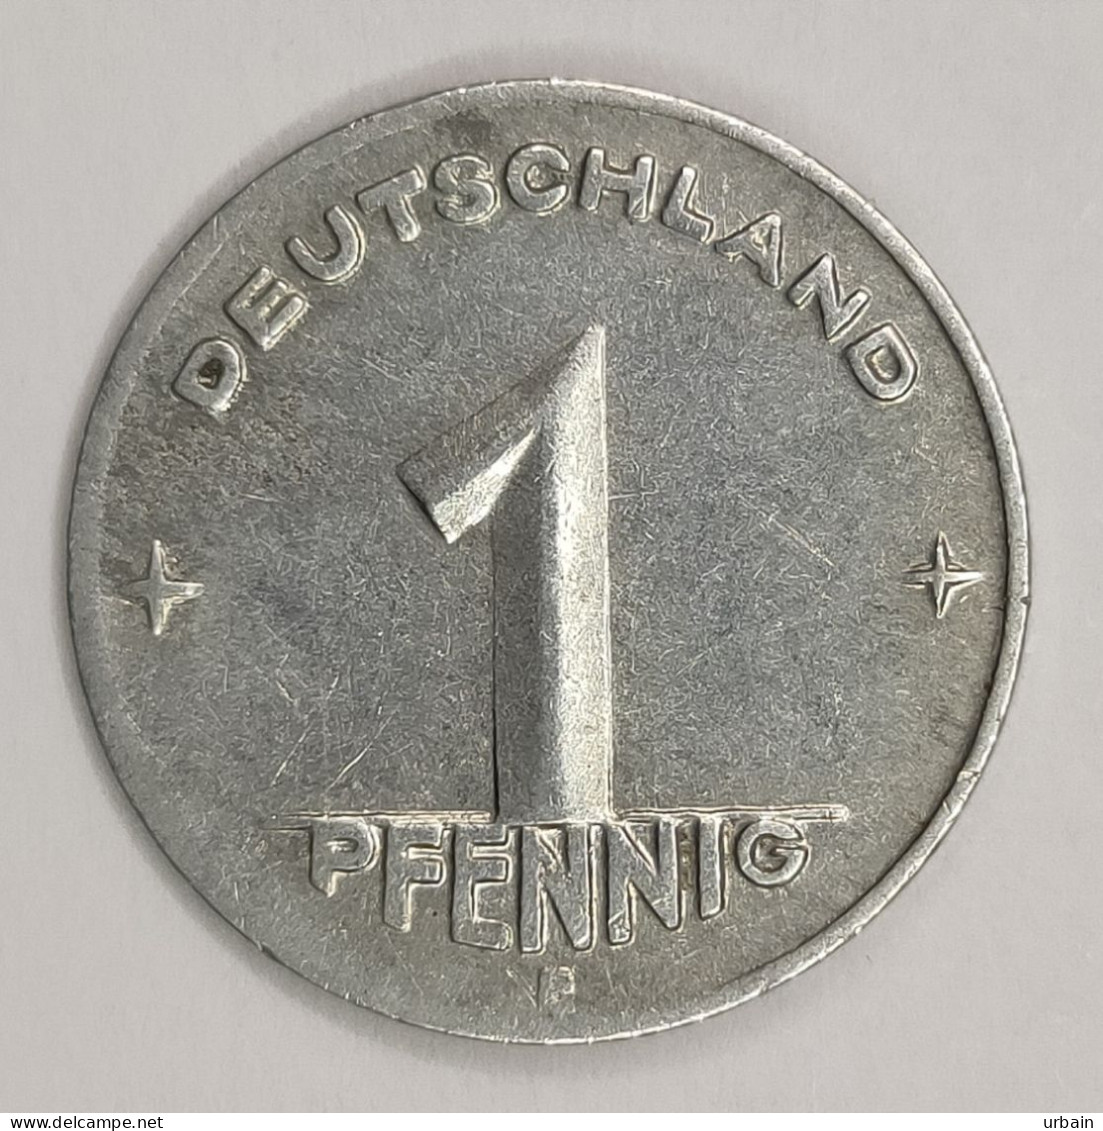 Lot 2 Coins - East Germany (DDR) (1948 – 1990) - 1 Pfennig - 1950, 1960 - 1 Pfennig